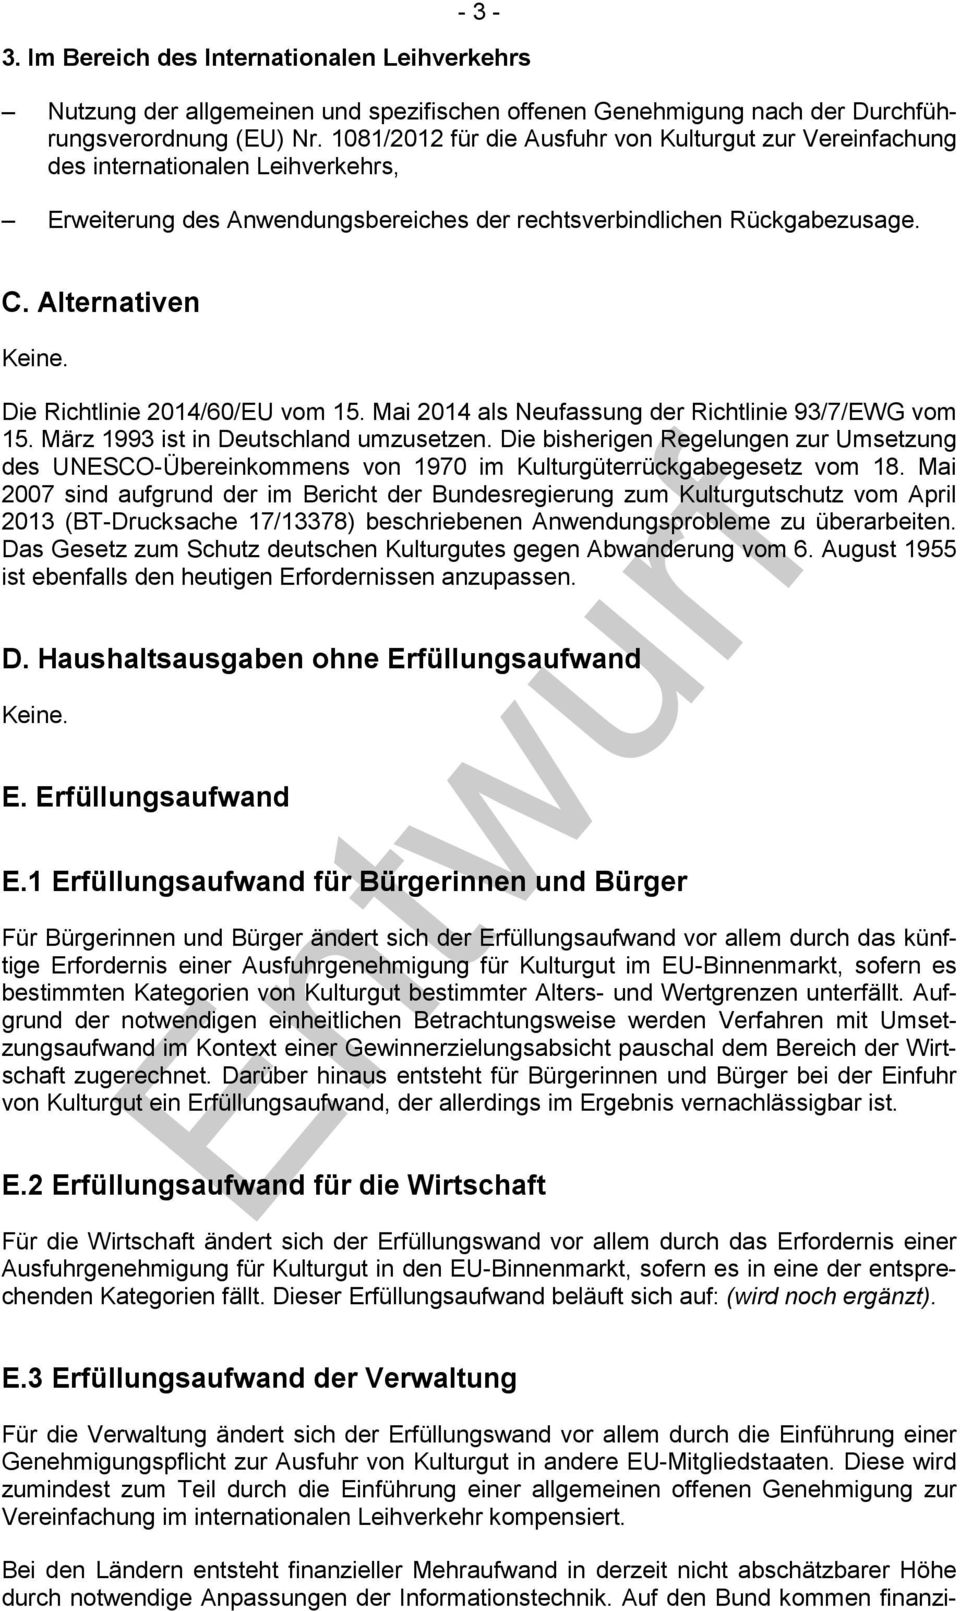 Die Richtlinie 2014/60/EU vom 15. Mai 2014 als Neufassung der Richtlinie 93/7/EWG vom 15. März 1993 ist in Deutschland umzusetzen.